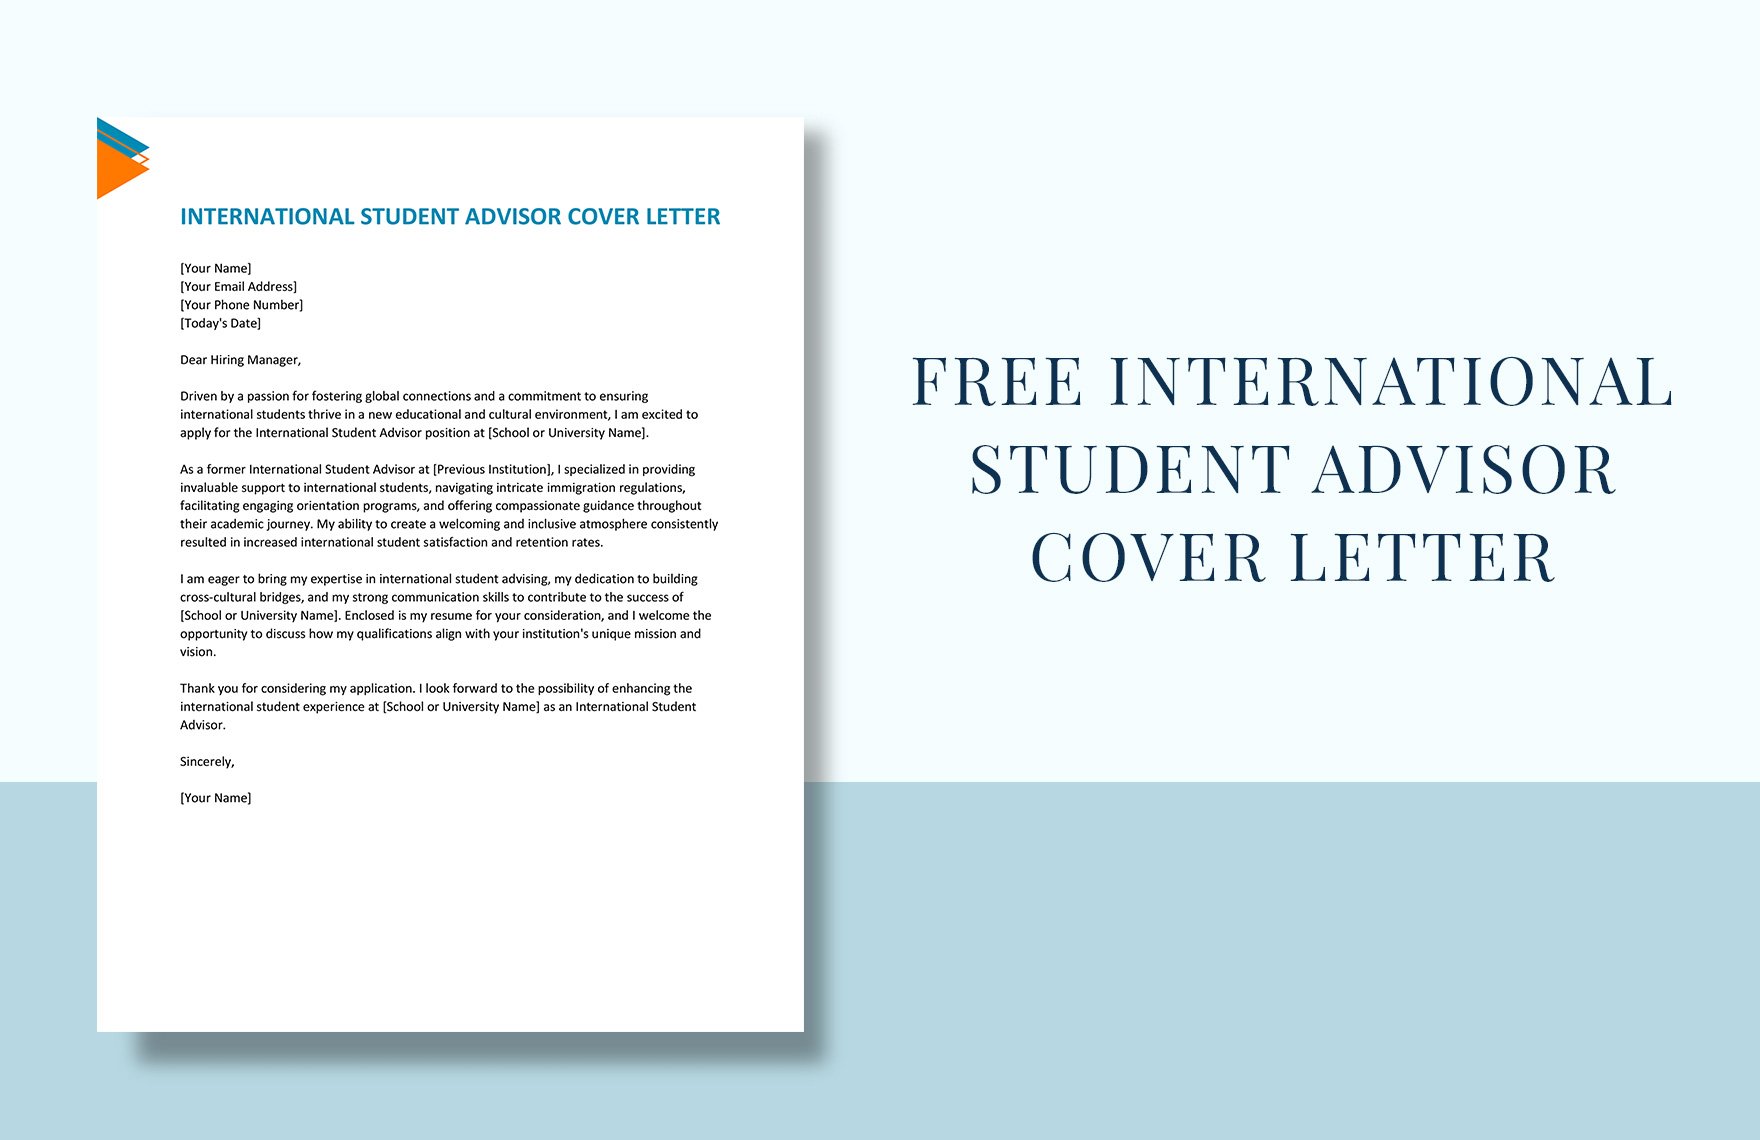 International Student Advisor Cover Letter in Word, Google Docs